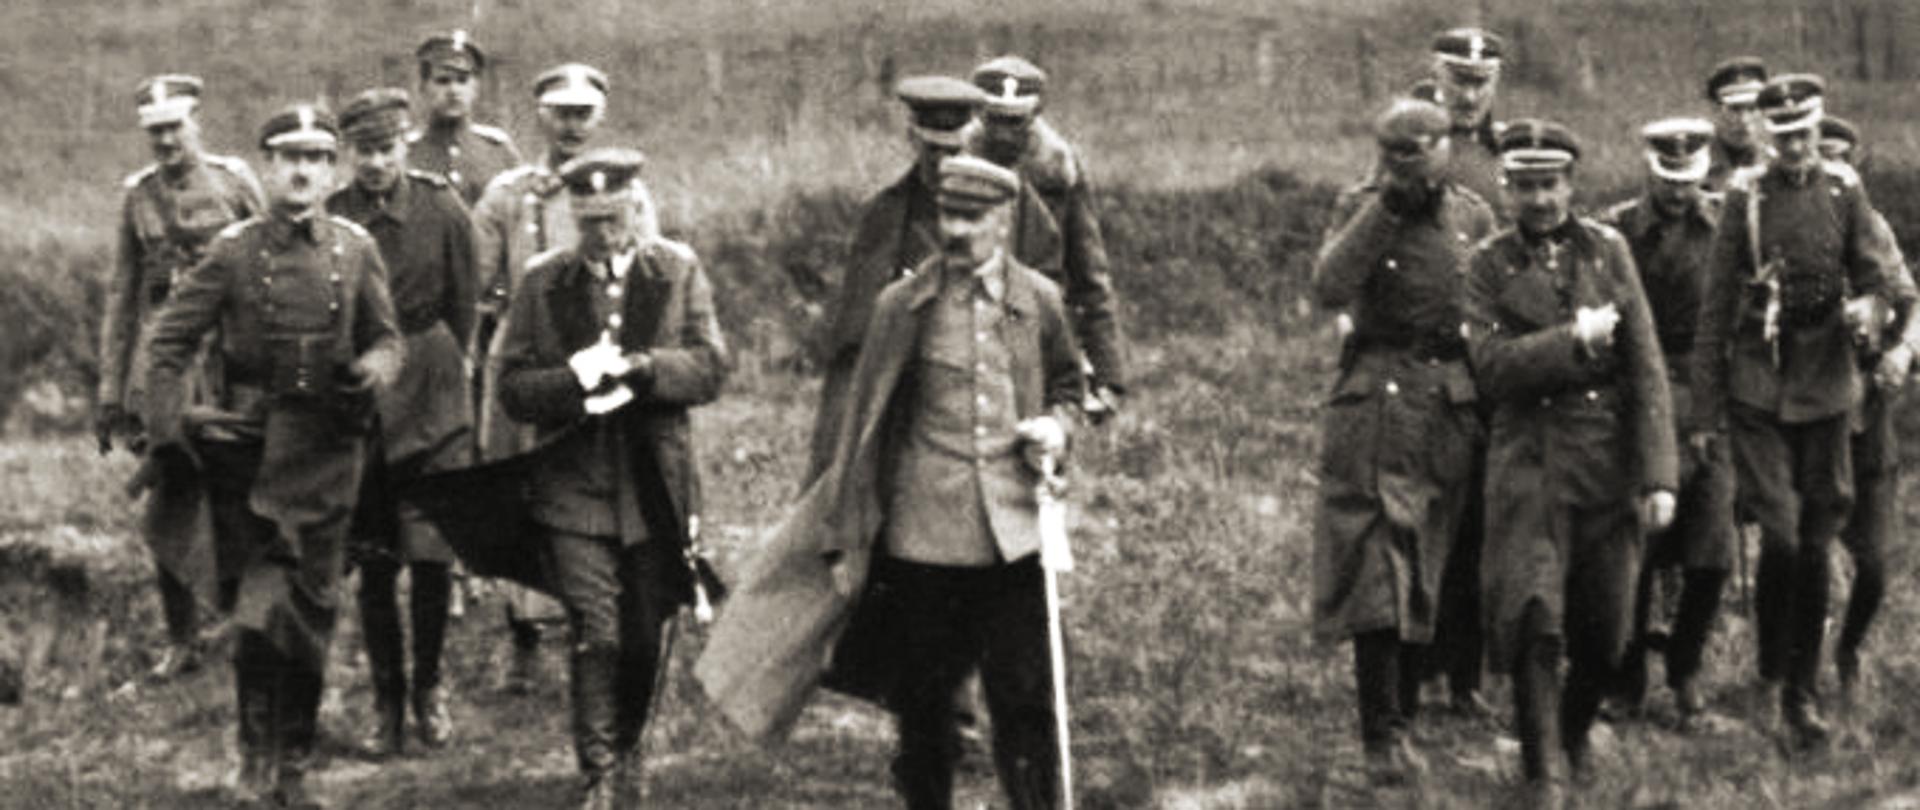 Naczelnik Państwa Józef Piłsudski ze sztabem oficerskim, 1920 r. Autor nieznany. Źródło - Wikimedia Commons [25.06.2020]; Centralne Archiwum Wojskowe, Warszawa